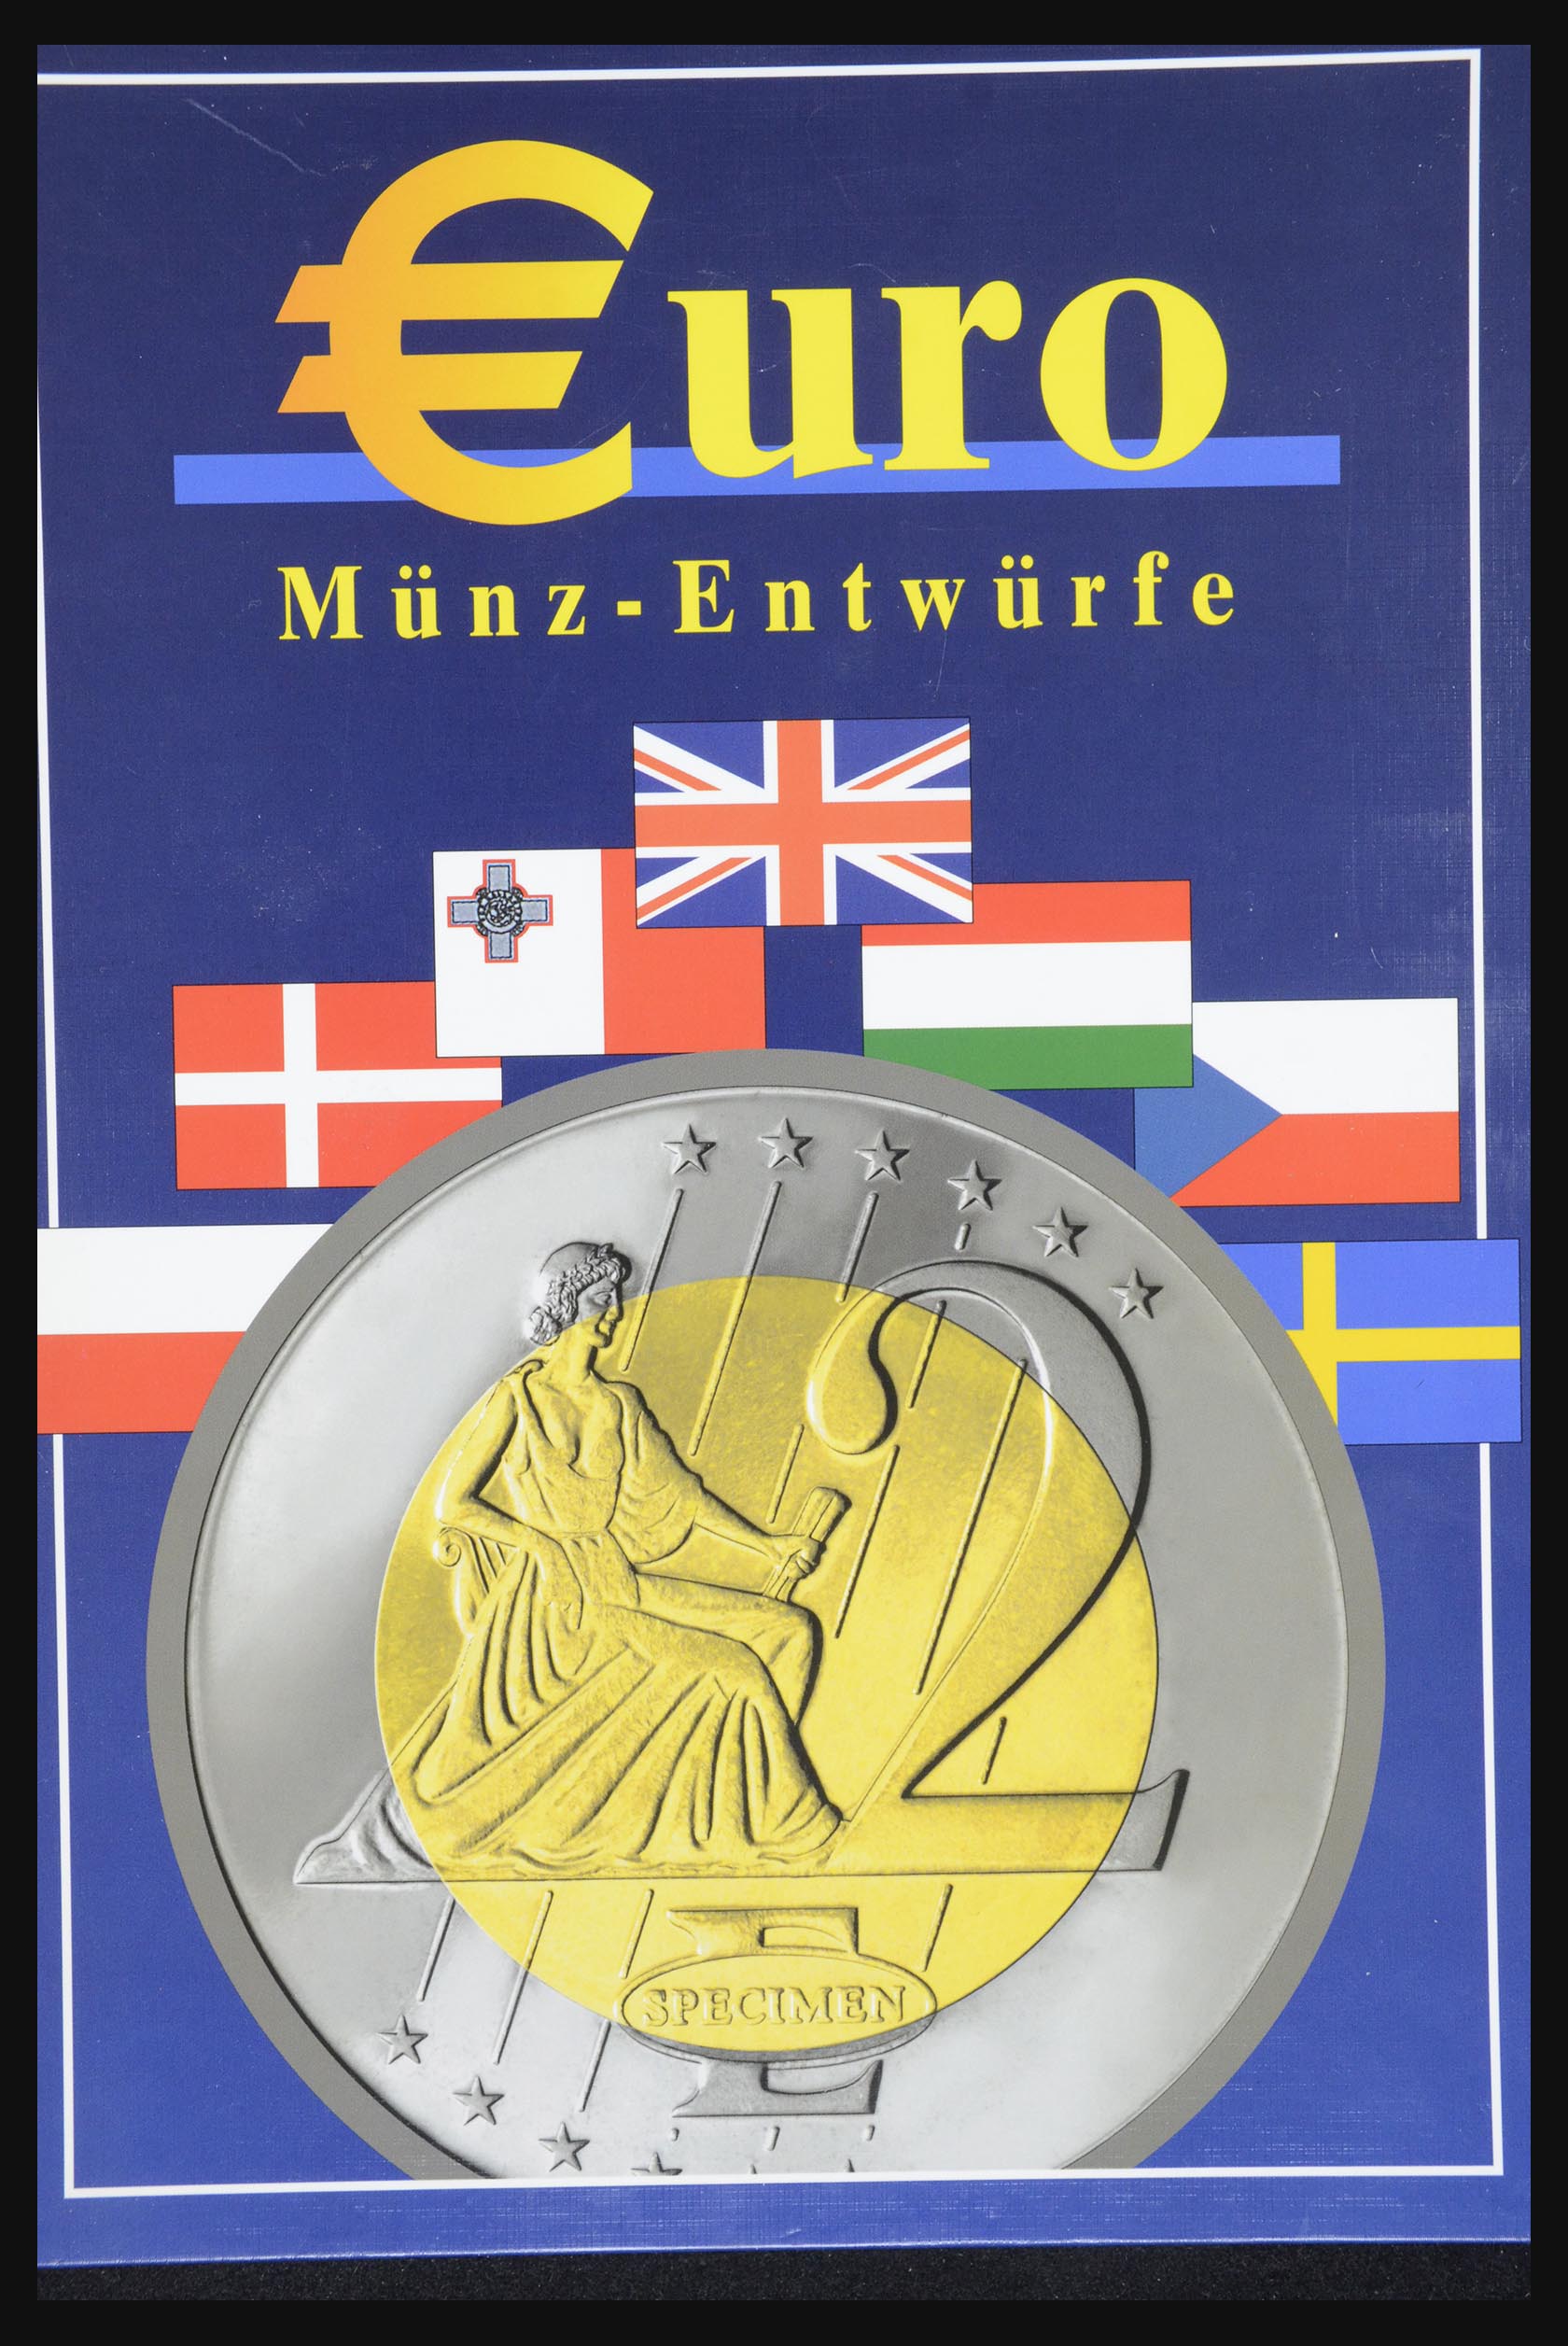 32149 032 - 32149 European countries eurocoins 2003.